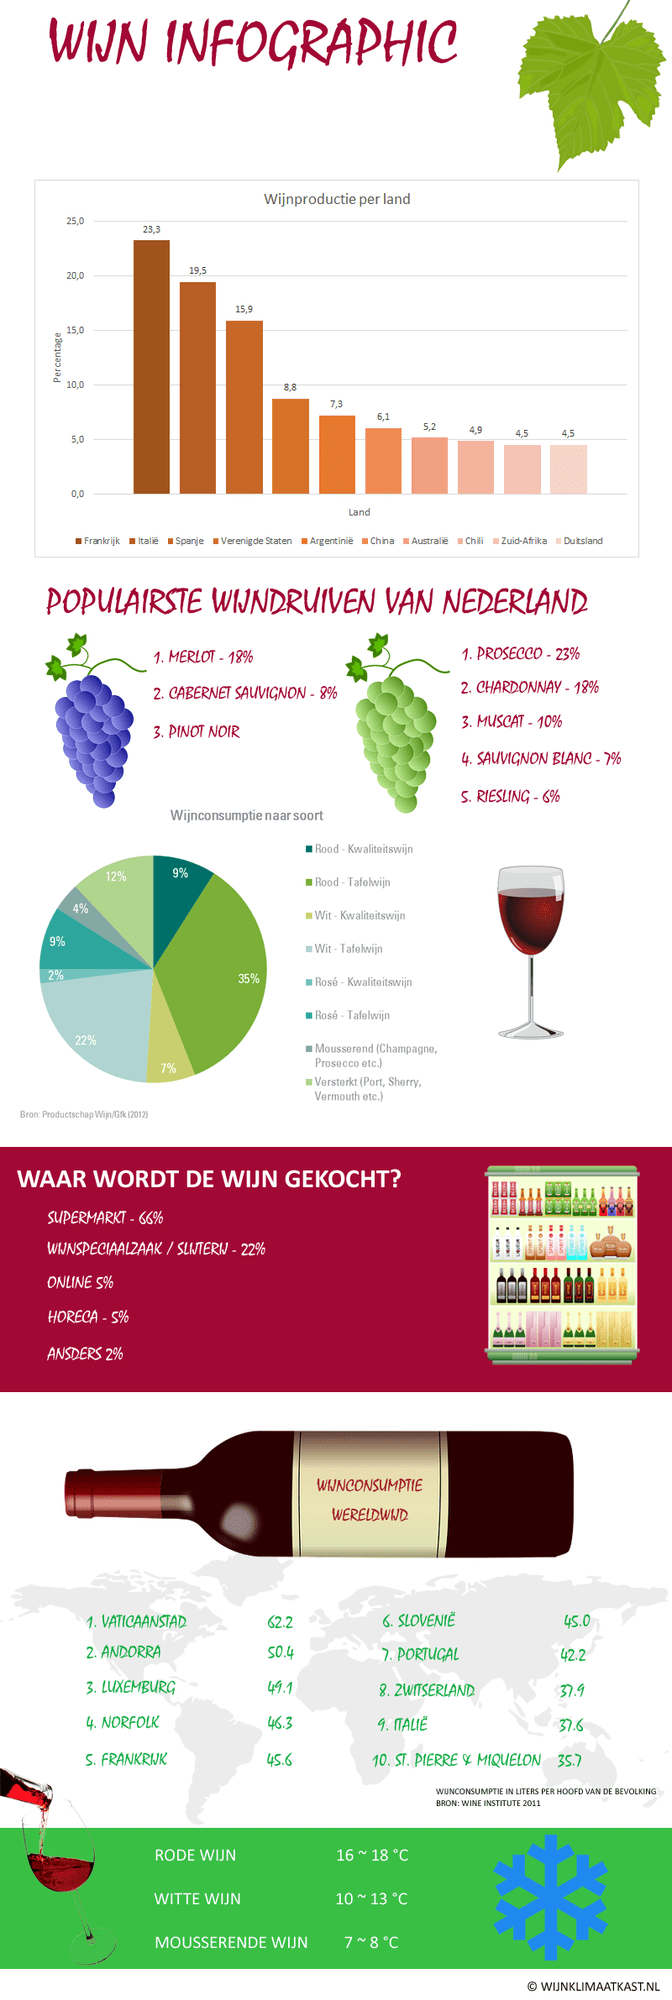 infographic wijn